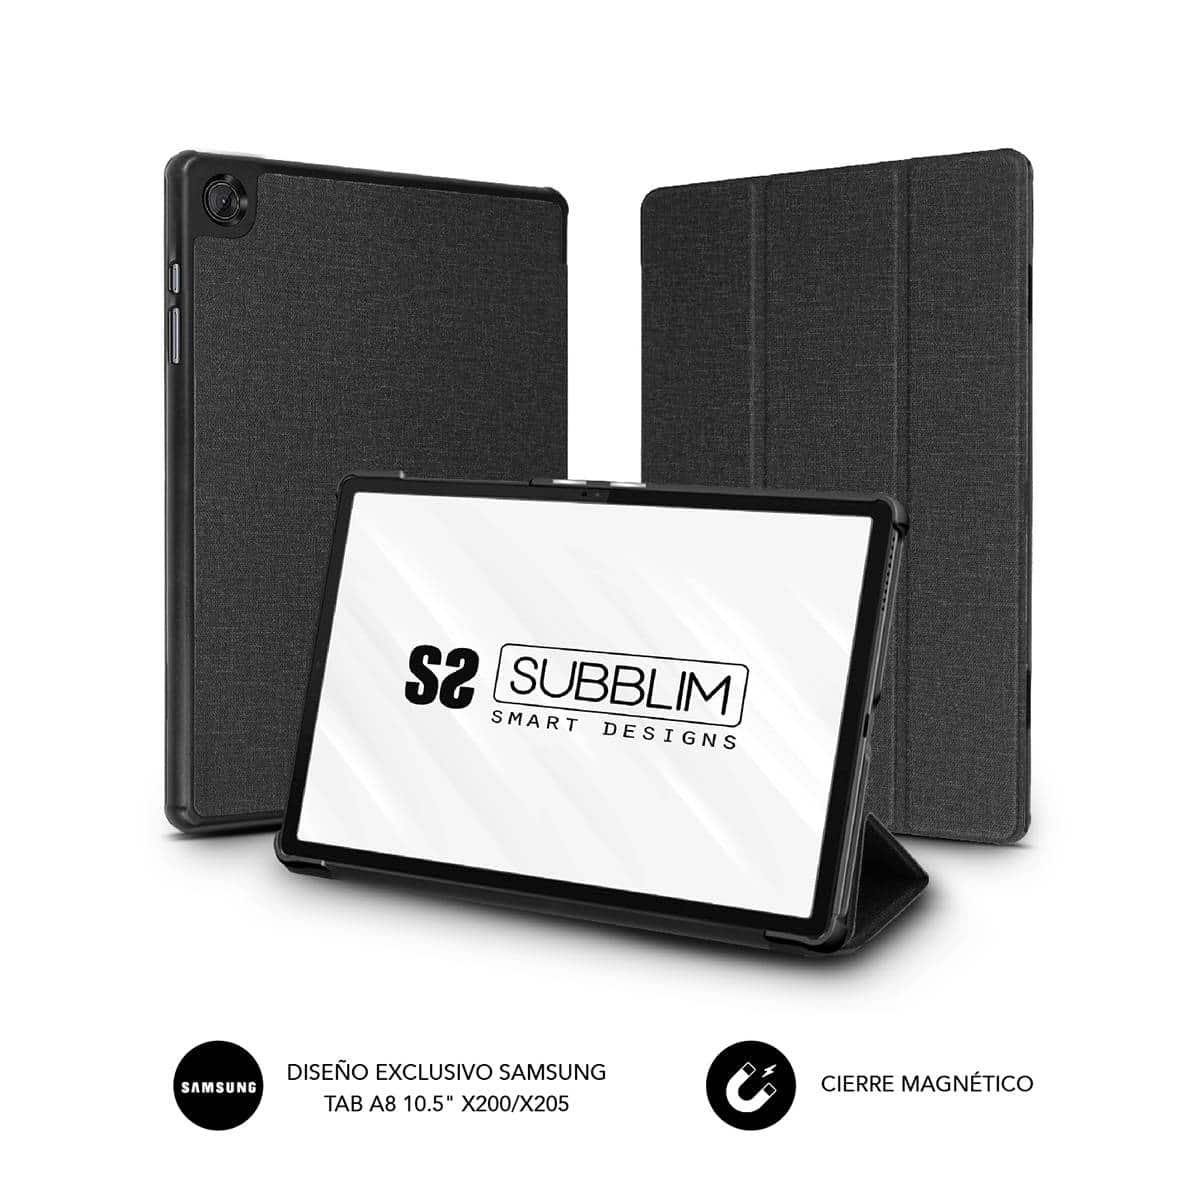 Étui Subblim pour Tablette Samsung GT A8 x200/x205 10.5" - Installation Facile avec Clip - Matière Tissu Résistant - Coque Arrière Rigide - Intérieur Velours - Ouverture Caméra - Fonction Support - Fermeture Magnétique - Couleur Noir